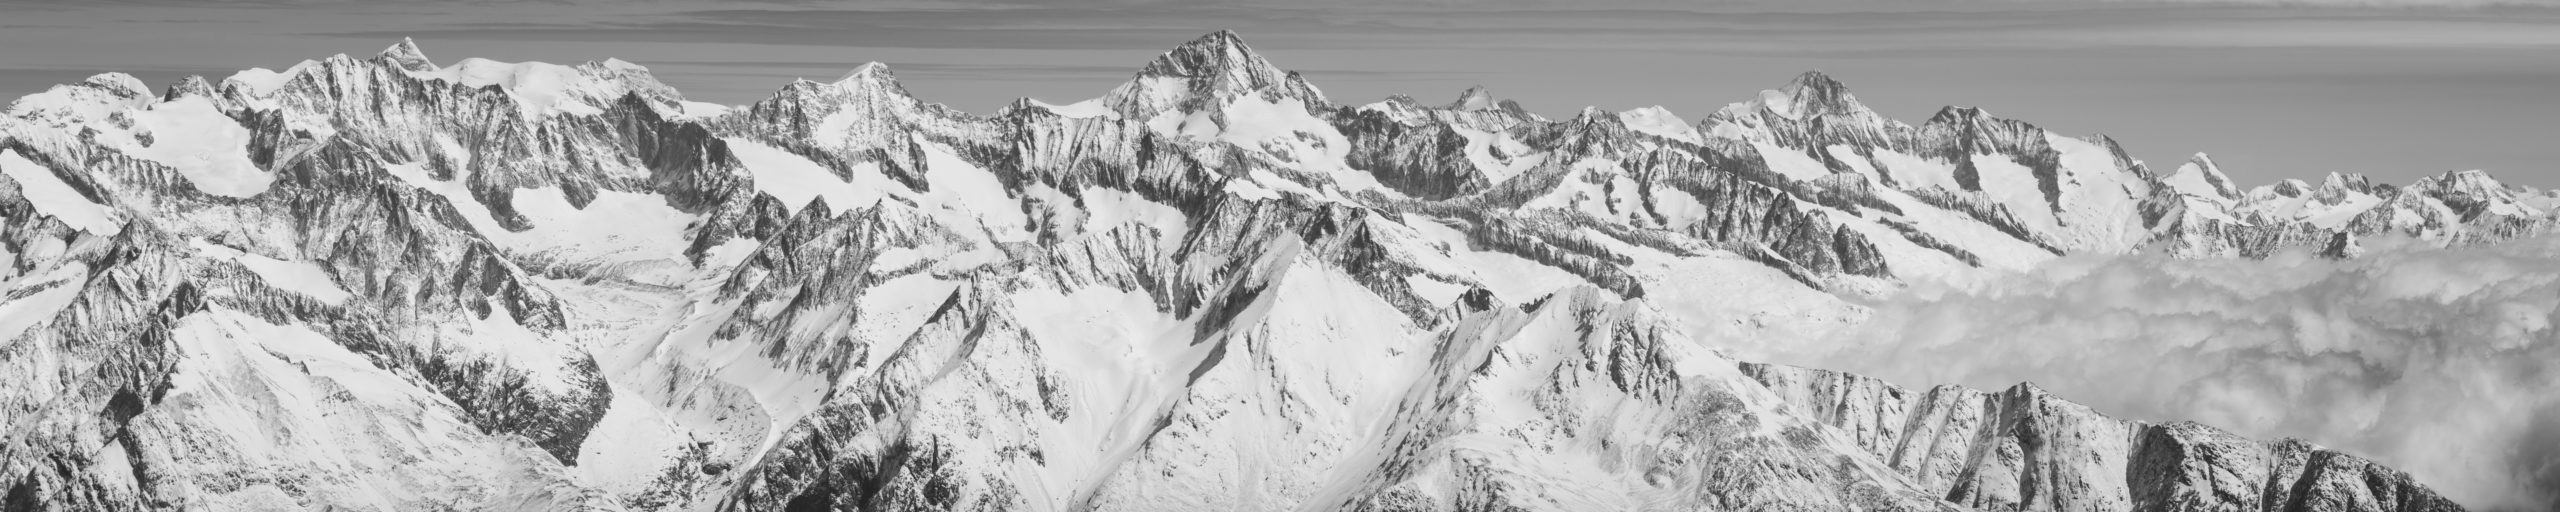 Alpes Bernoises panorama - Tableau photo noir et blanc de montagne dans la brune et une mer de nuages